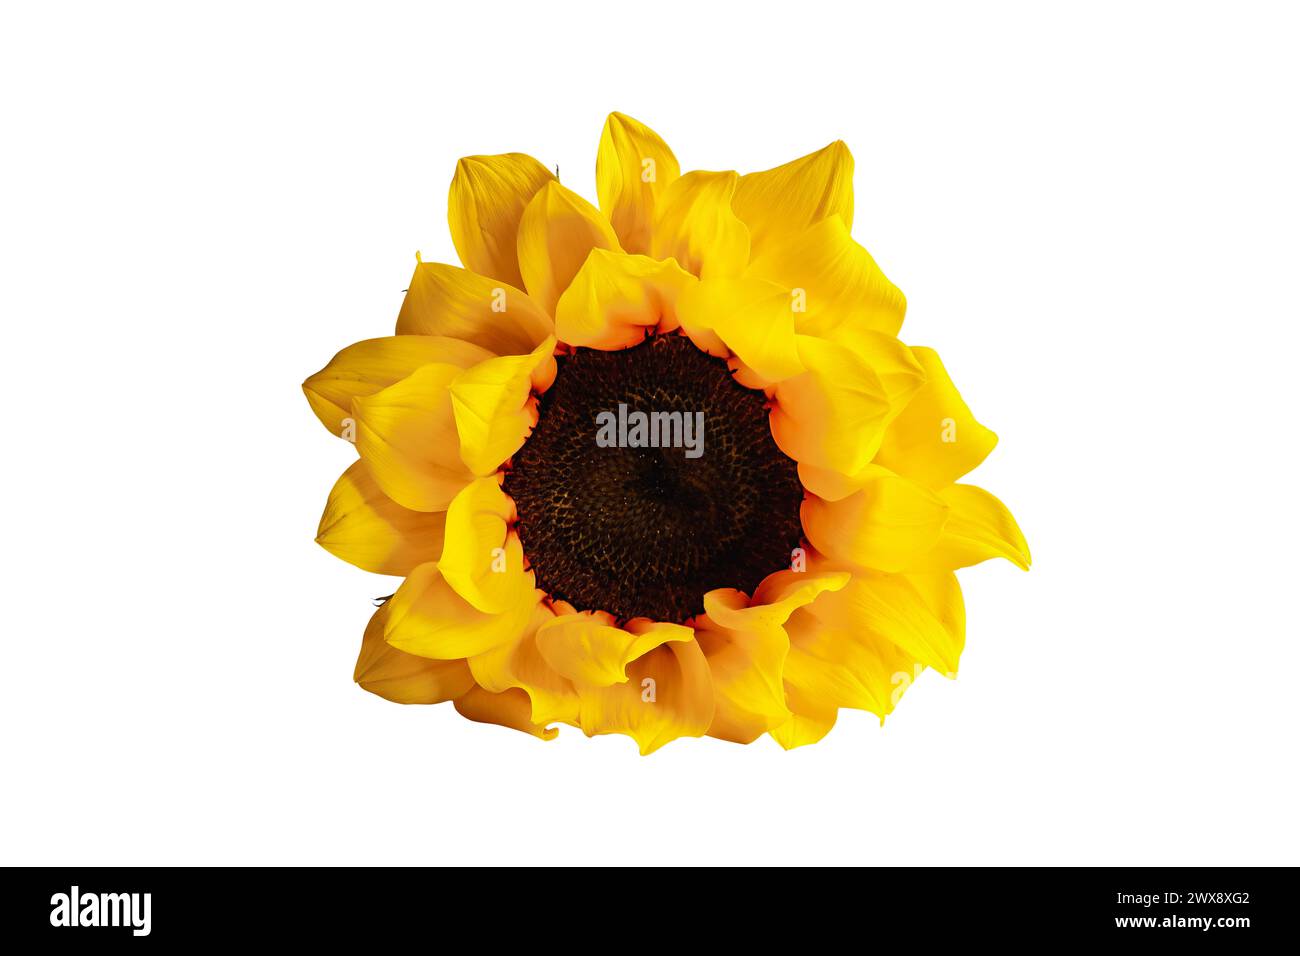 Belle vraie fleur de tournesol jaune et orange isolée sur fond blanc avec chemin de détourage inclus. Banque D'Images